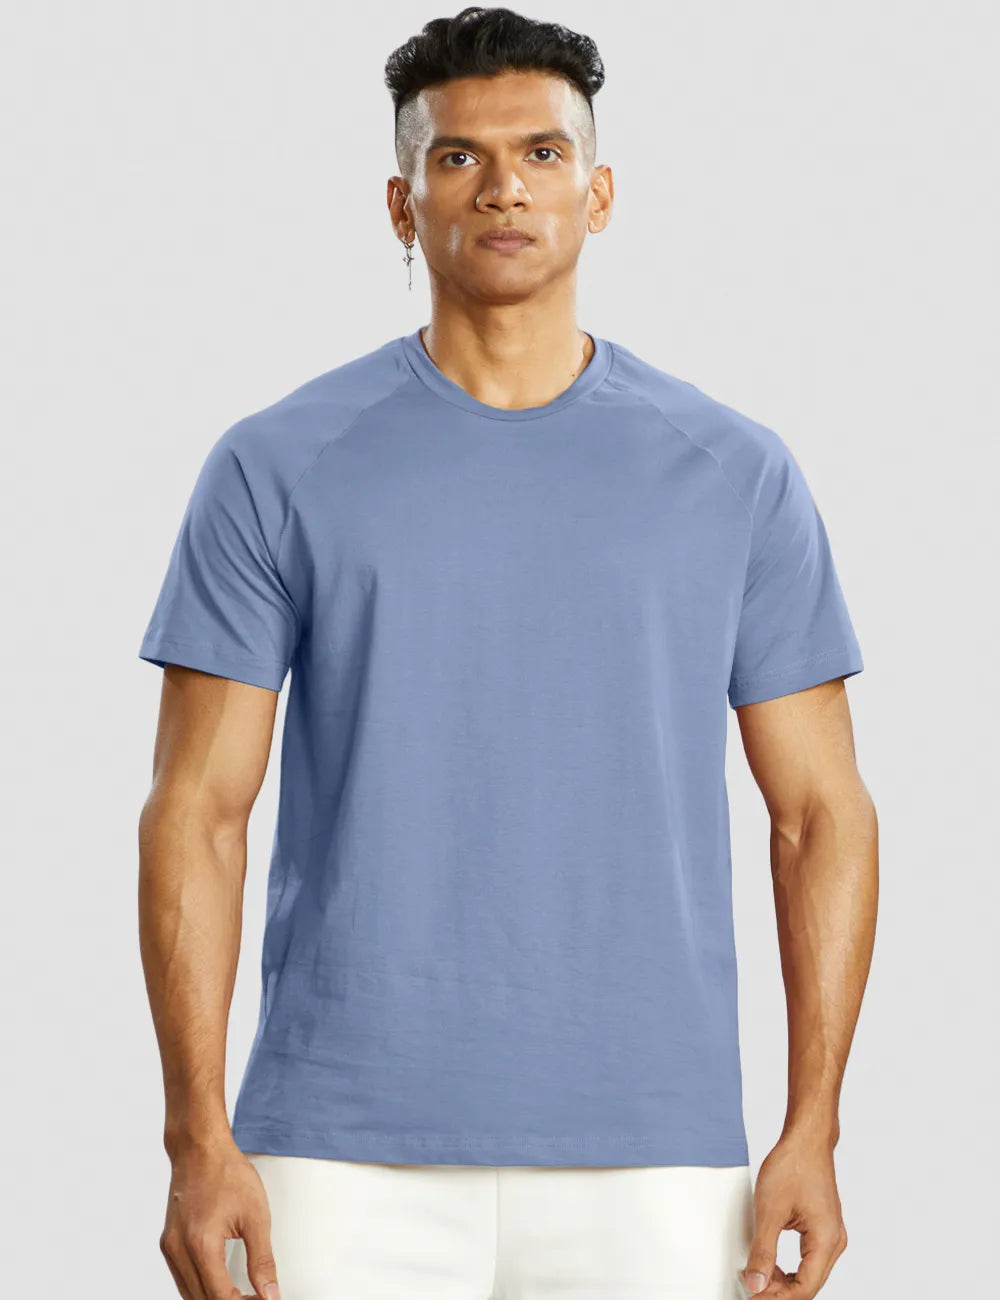 Muscle Fit T-shirt Men